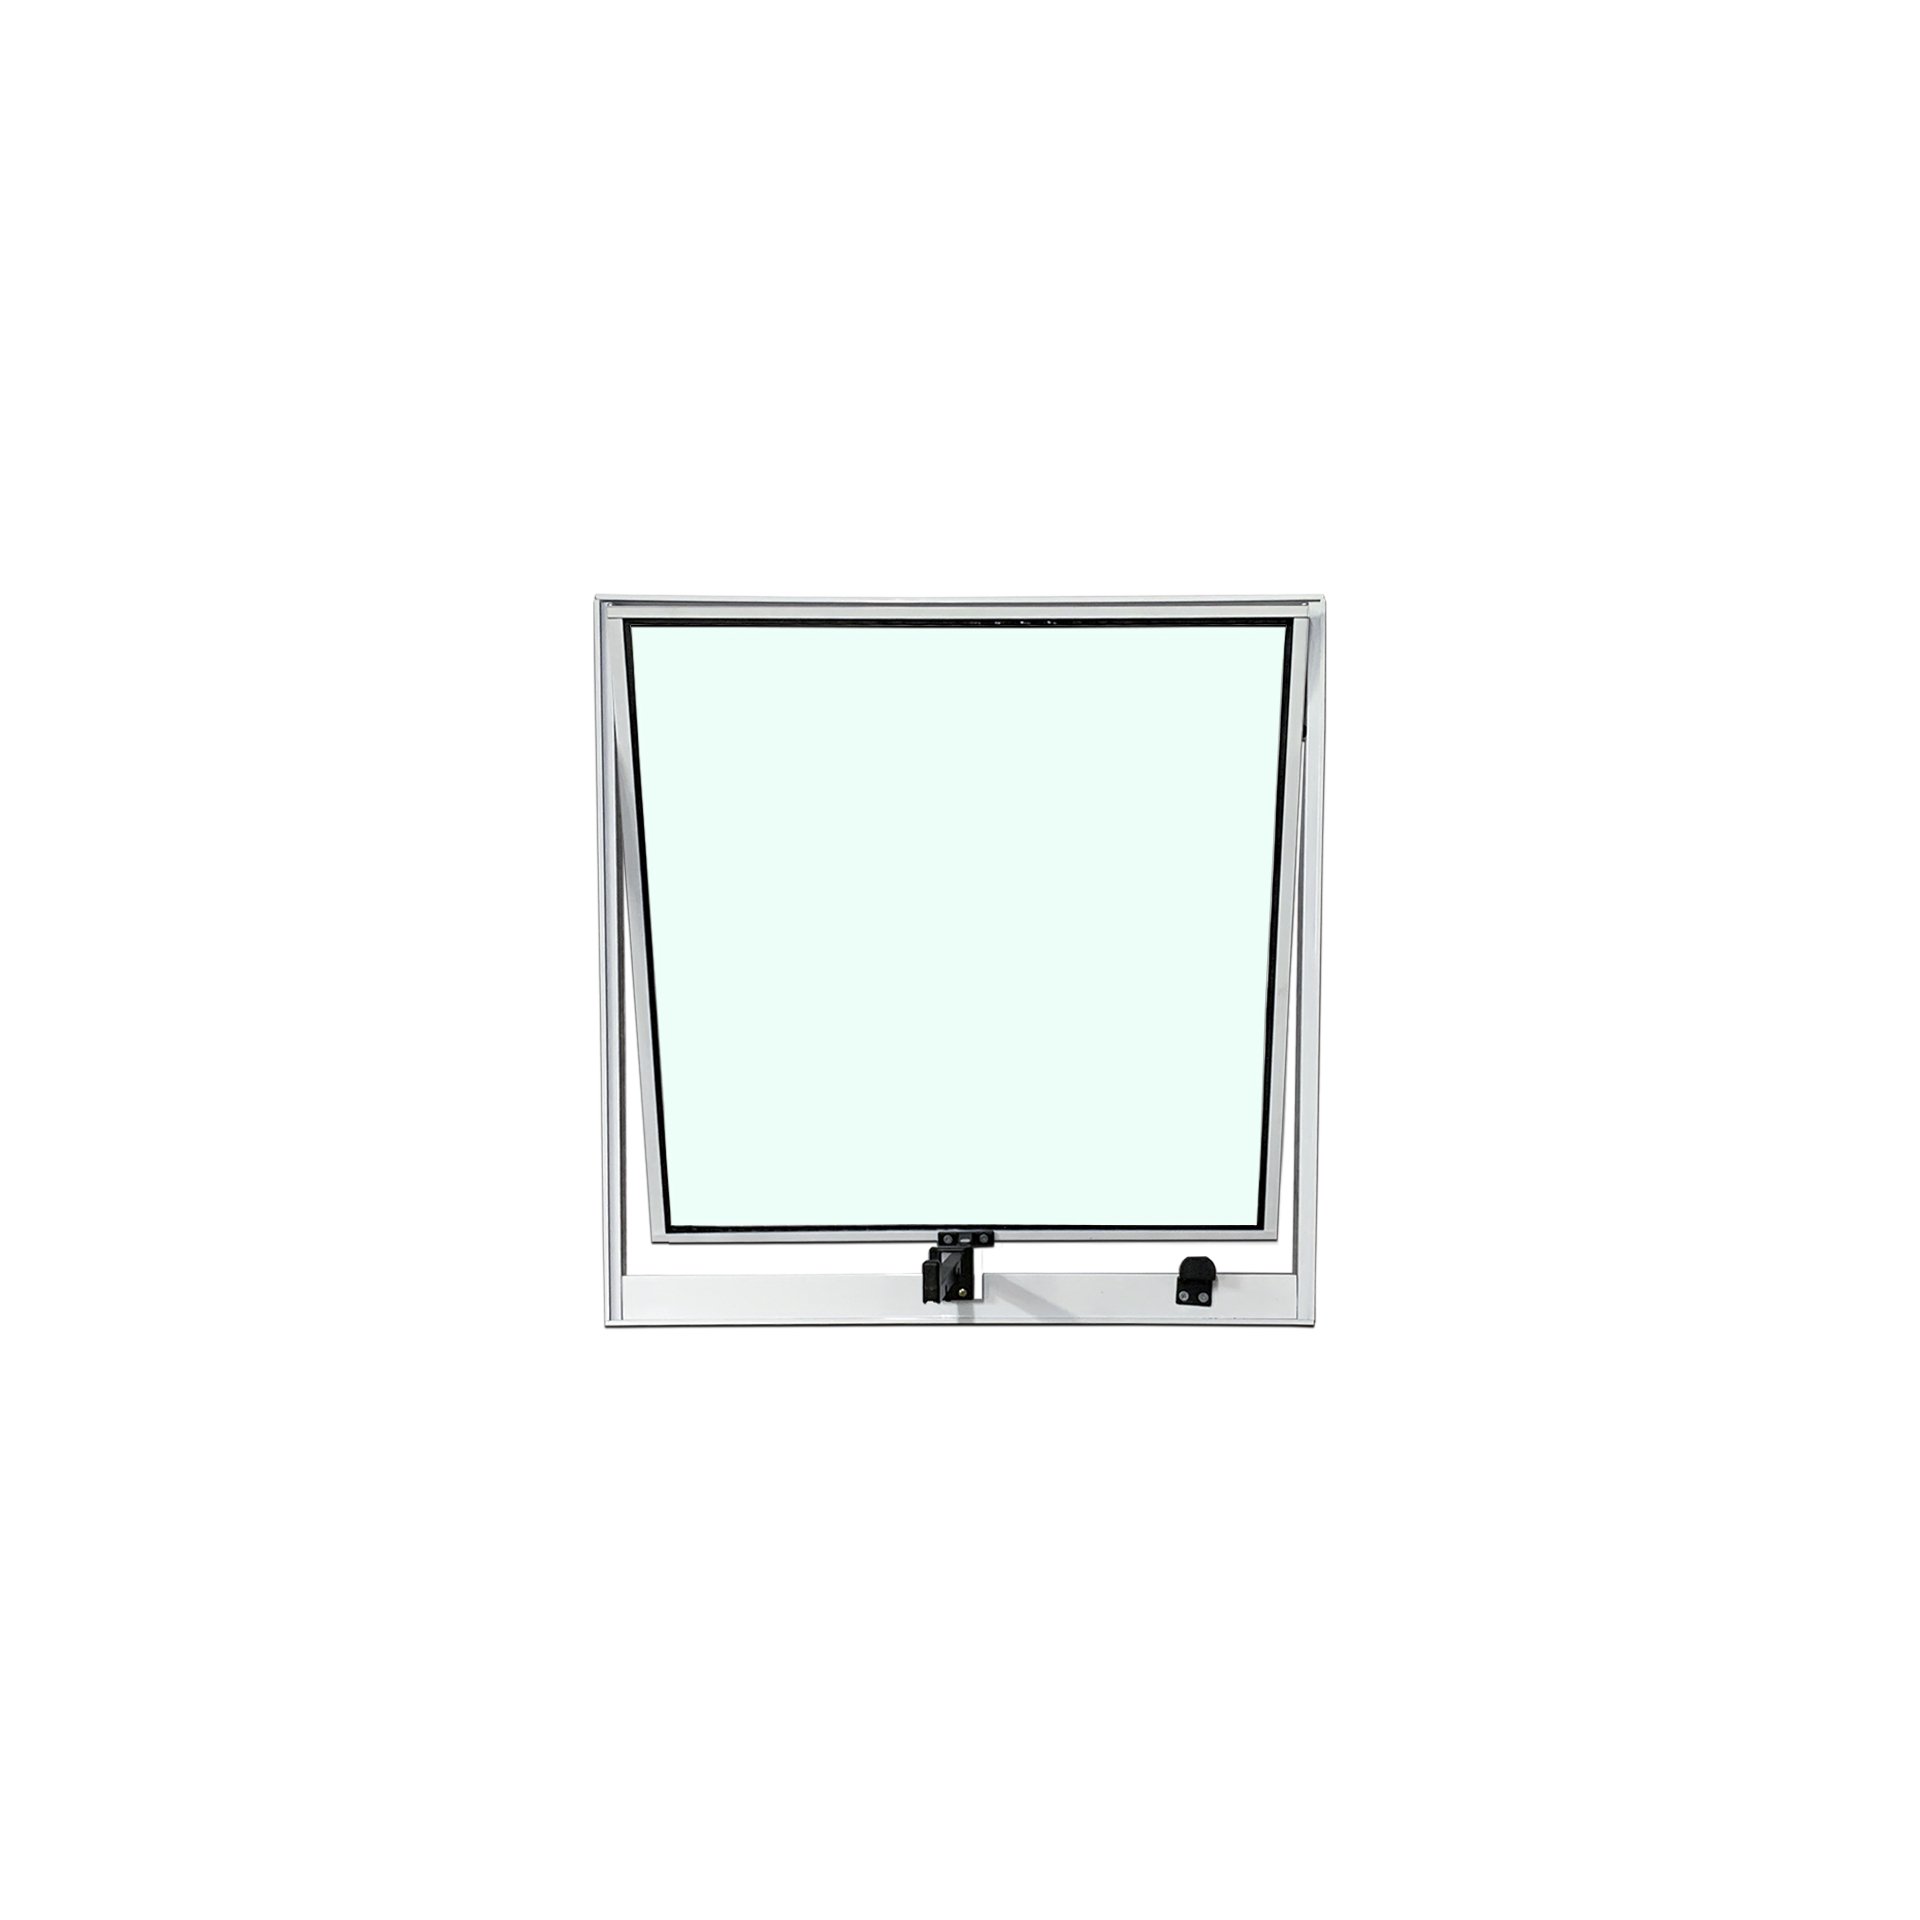 Vitro Projetante 40x60 Alumínio Branco Vidro Liso - 1